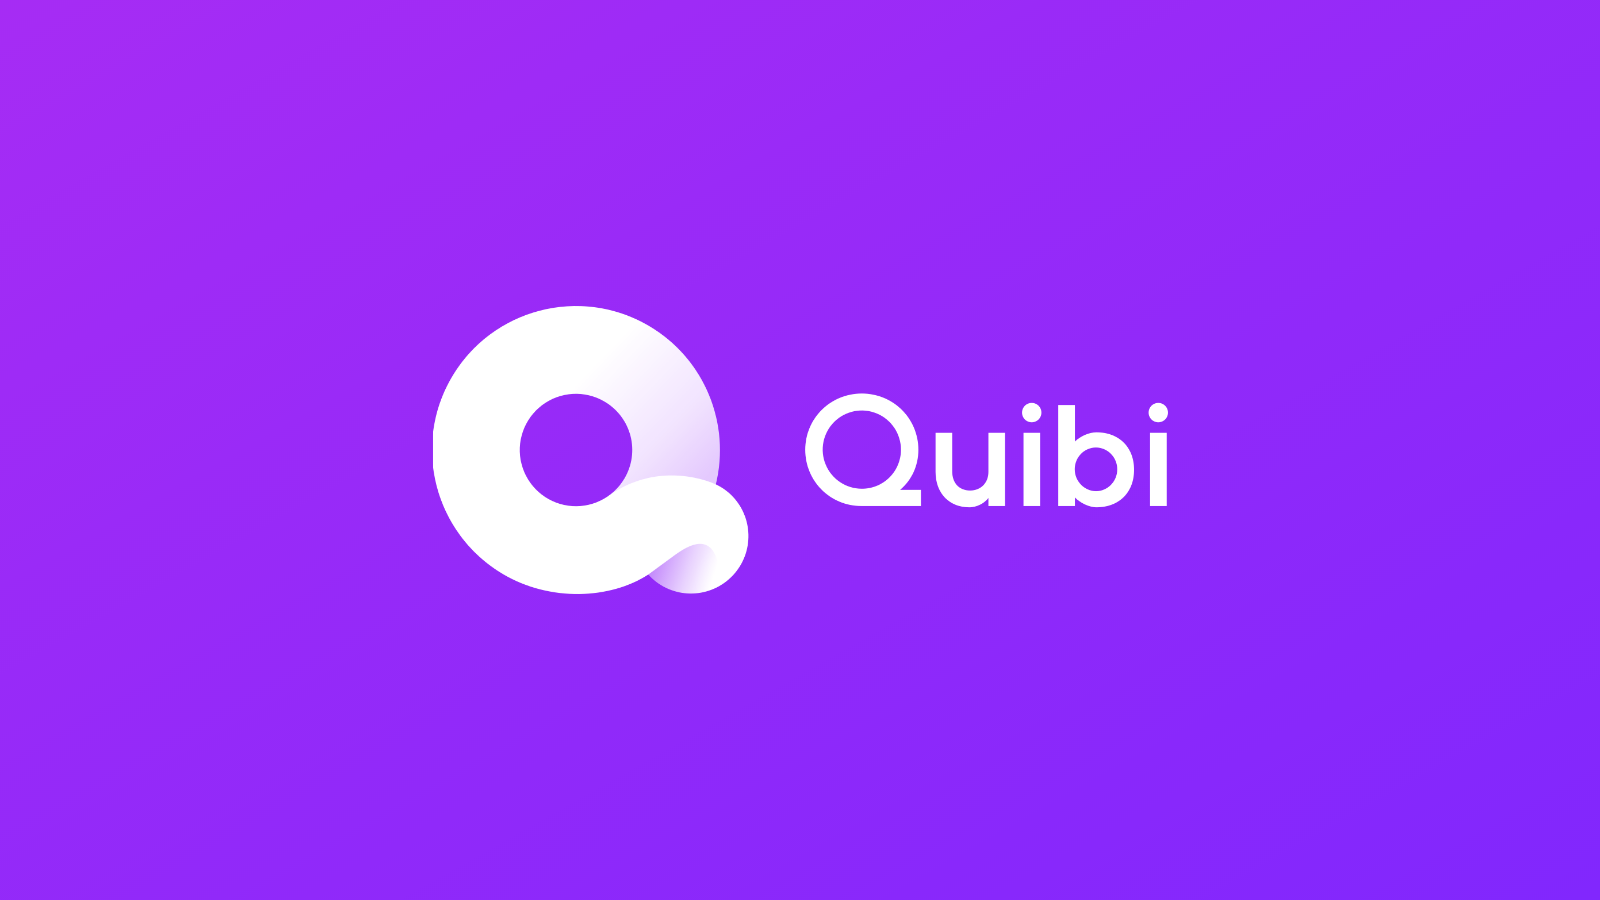 إطلاق خدمة البث الجديدة "Quibi" بإصدار تجريبي مجاني لمدة 90 يومًا 11